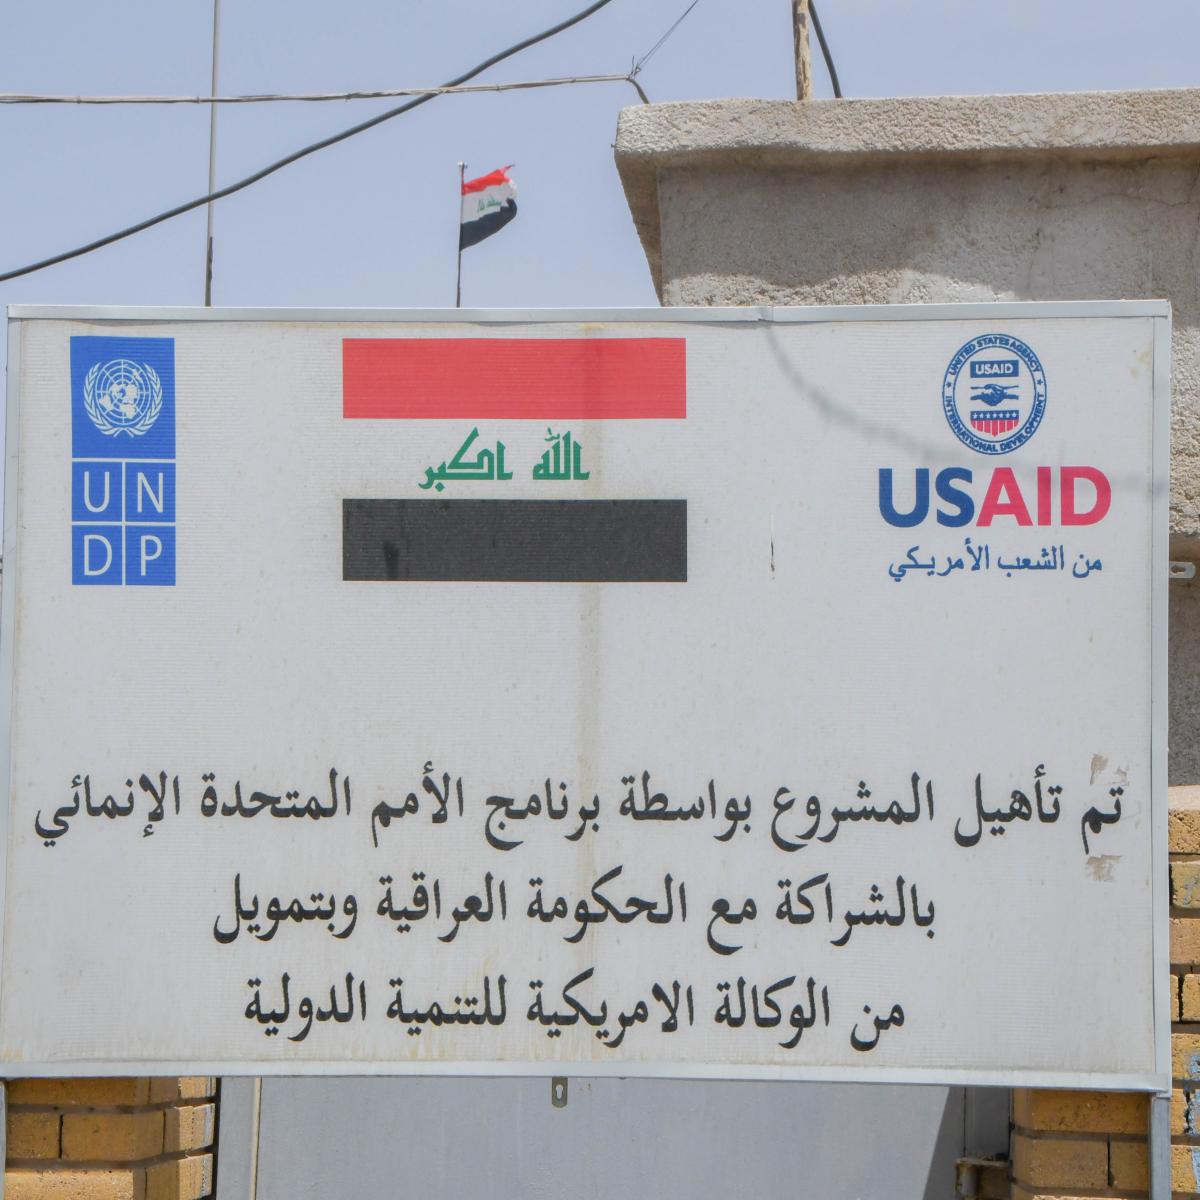 إعادة تأهيل مجمع مياه الحسين من قبل برنامج الاستجابة للأزمات والقدرة على الصمود في العراق التابع لبرنامج الأمم المتحدة الإنمائي بتمويل من الوكالة الأمريكية للتنمية الدولية